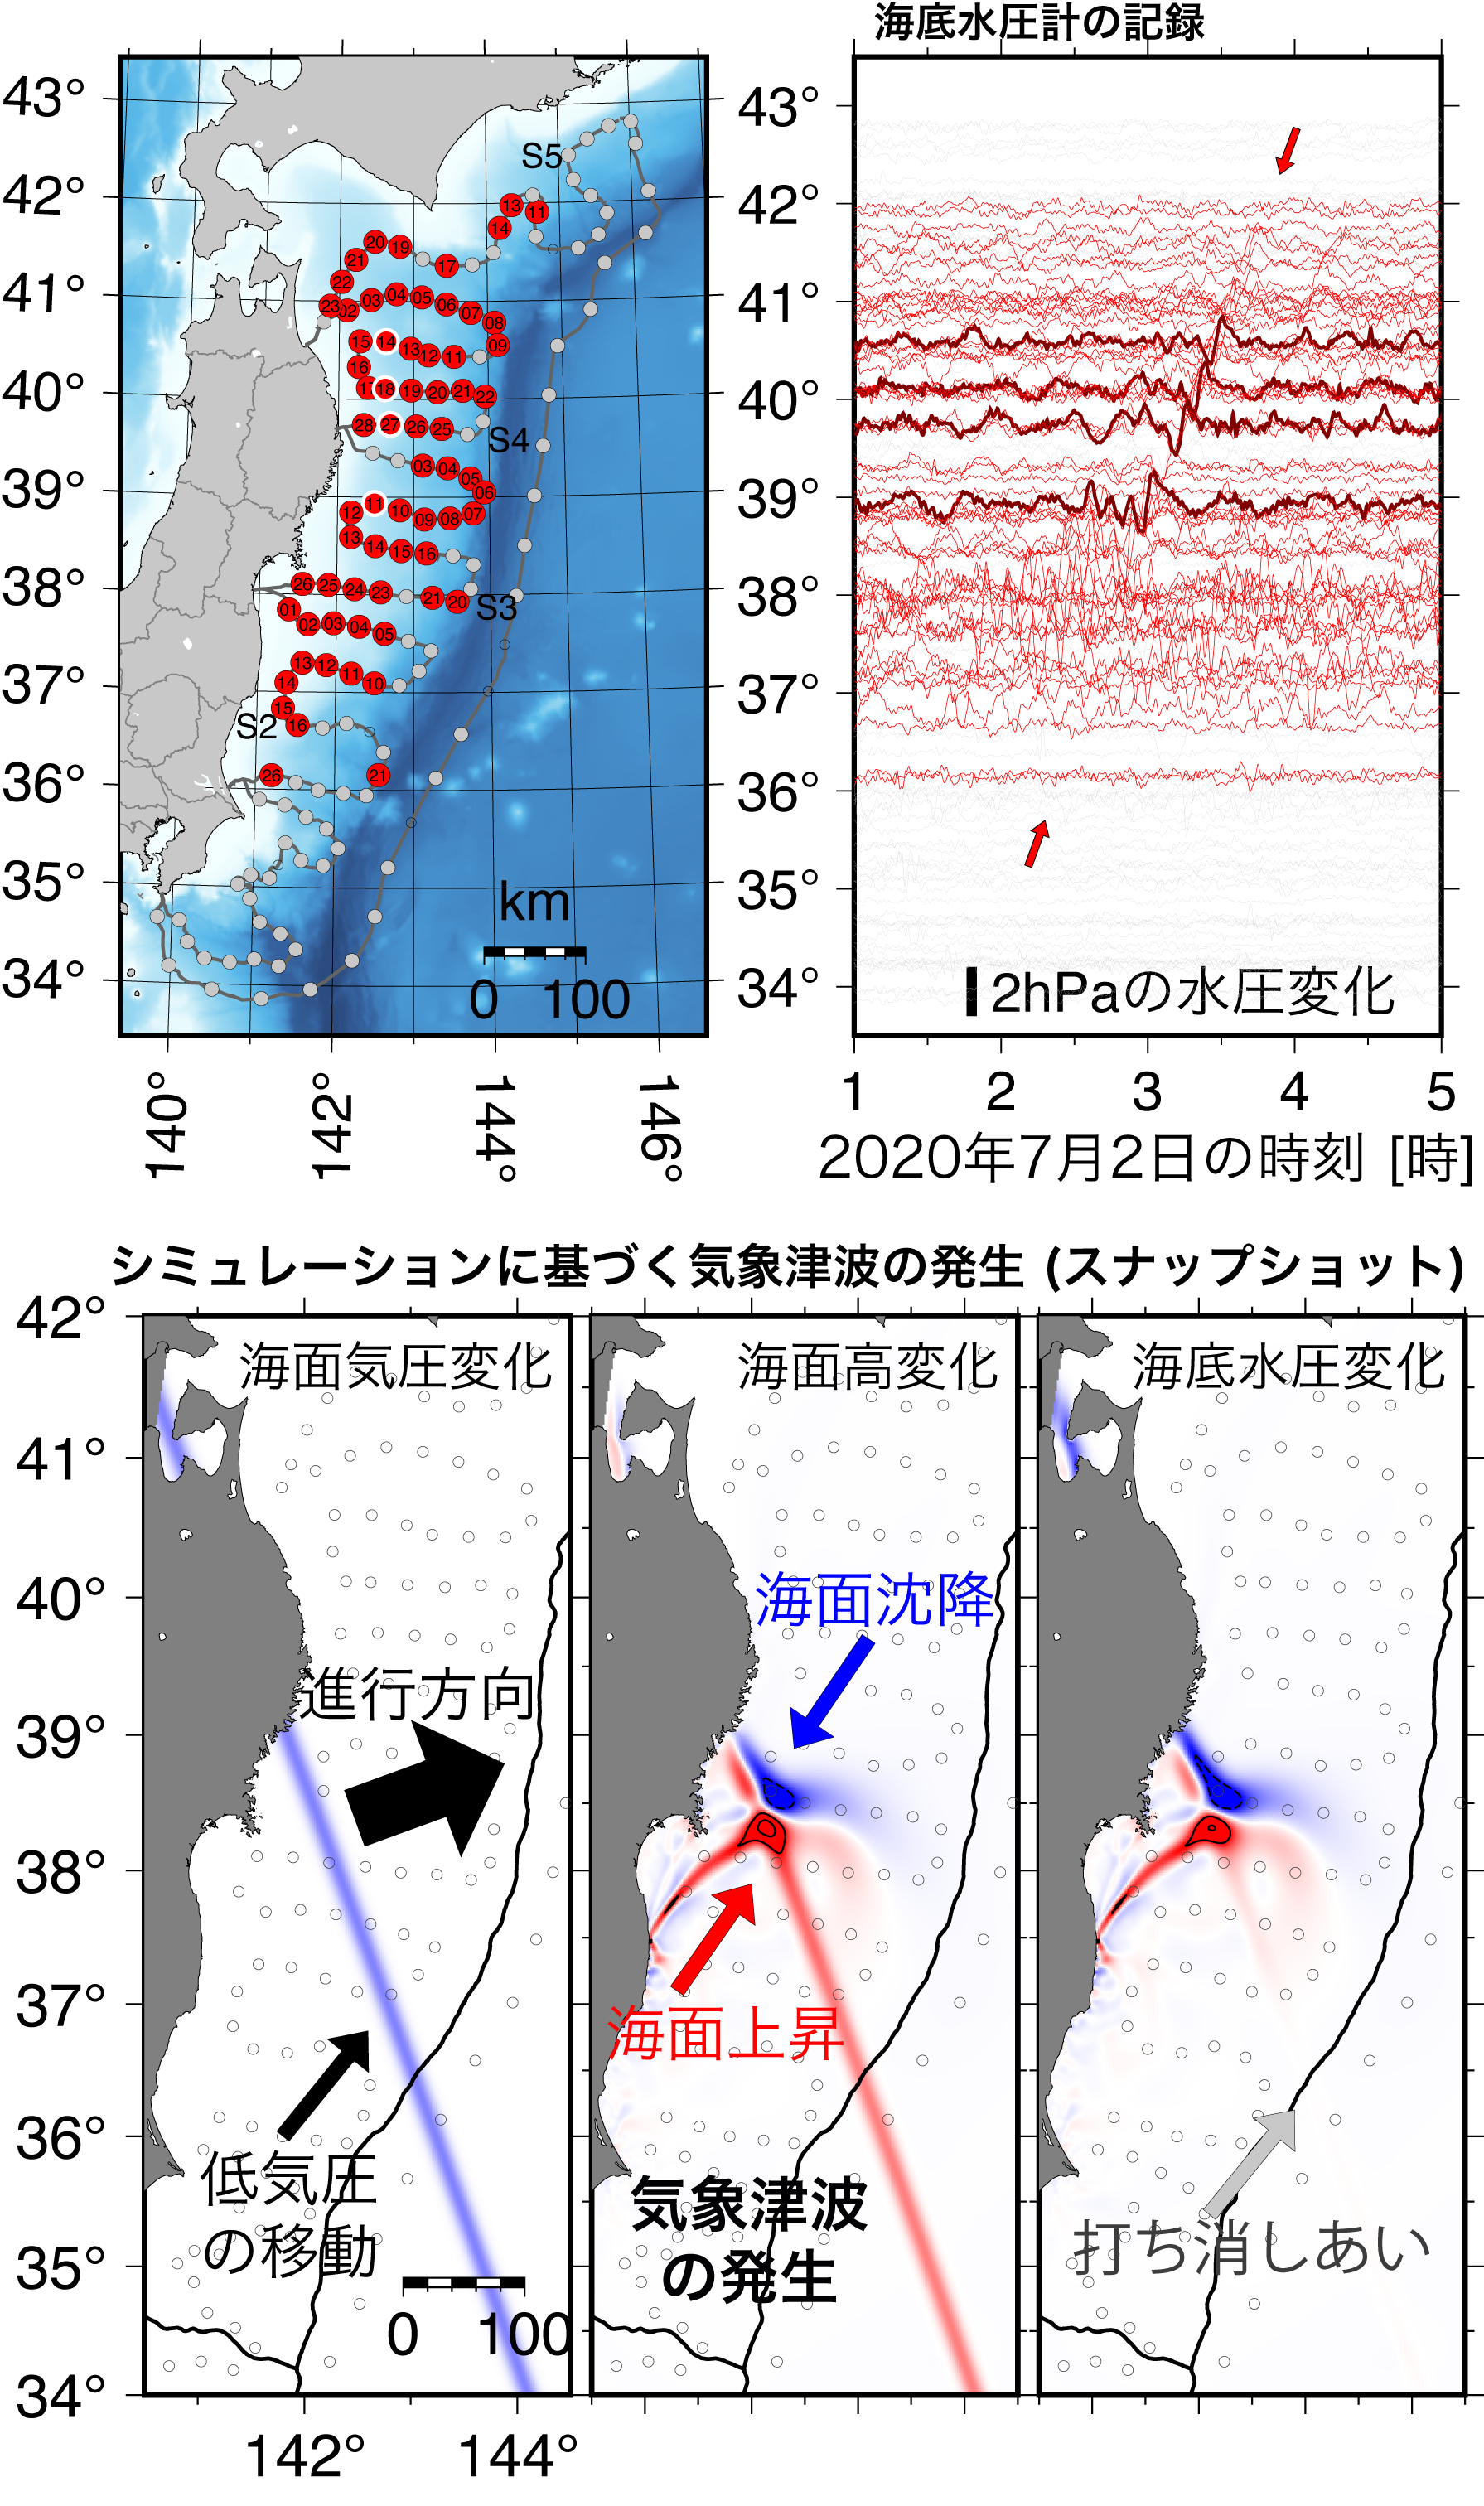 (上図) S-net海底圧力観測網の観測点と観測された水圧 (津波) 波形．縦軸は緯度に従って並べている．午前2時から4時にかけて北へ伝わる波が確認できる．(下図) 観測記録を説明する数値シミュレーションの結果における，低気圧 (左)，海面波高 (中央)，および海底水圧 (右) の分布のスナップショット． 